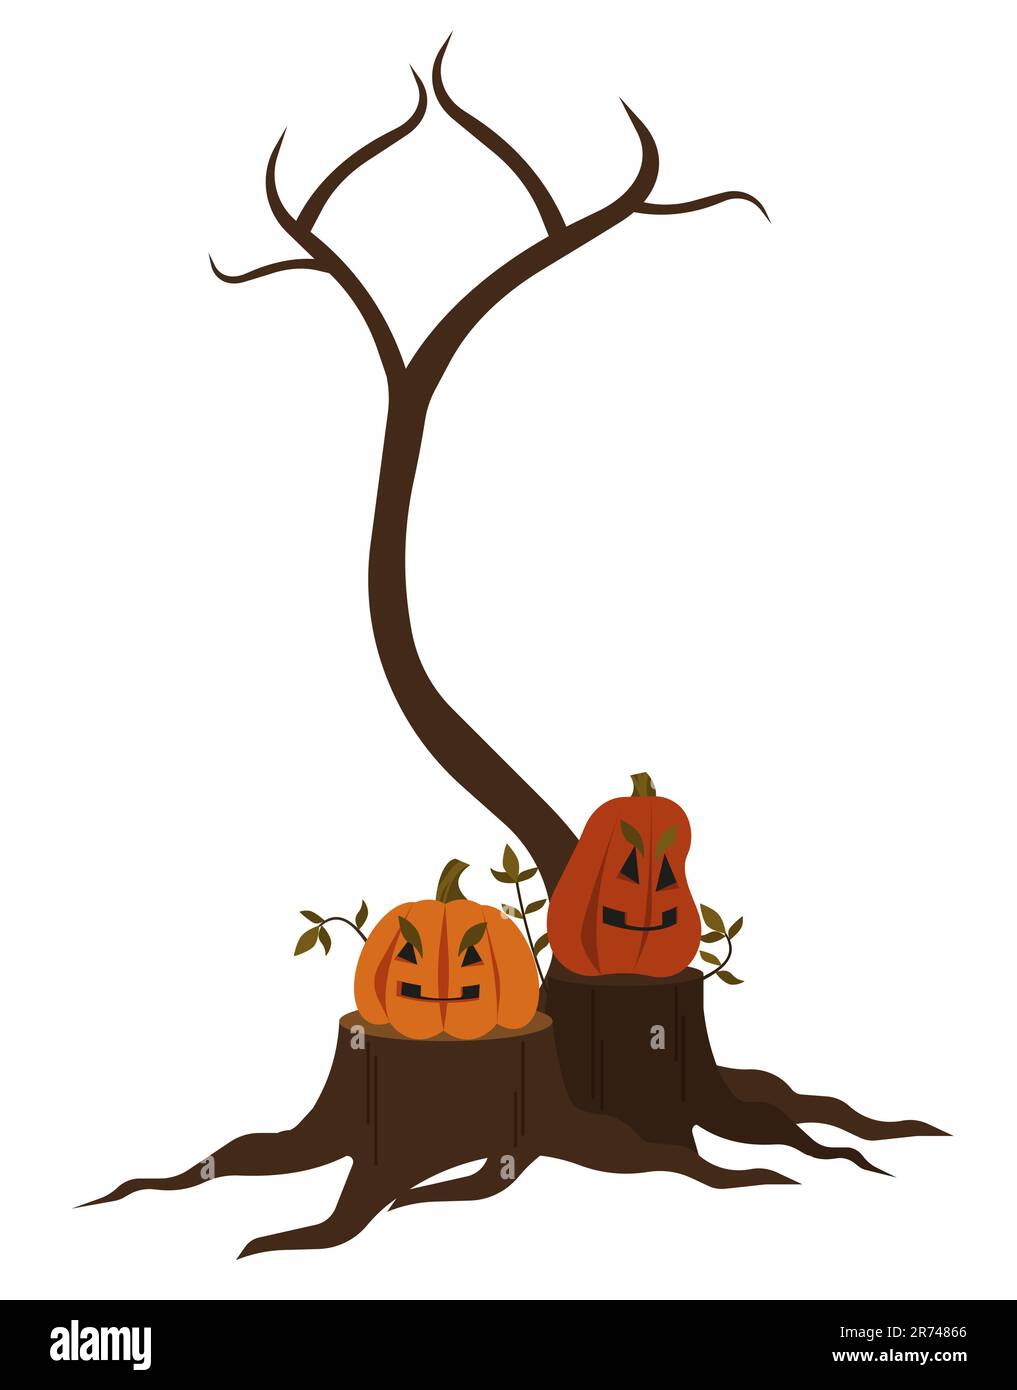 Citrouilles sur les souches, arbre d'automne sans feuilles. Objet Halloween isolé sur fond blanc. Illustration vectorielle plate. Illustration de Vecteur